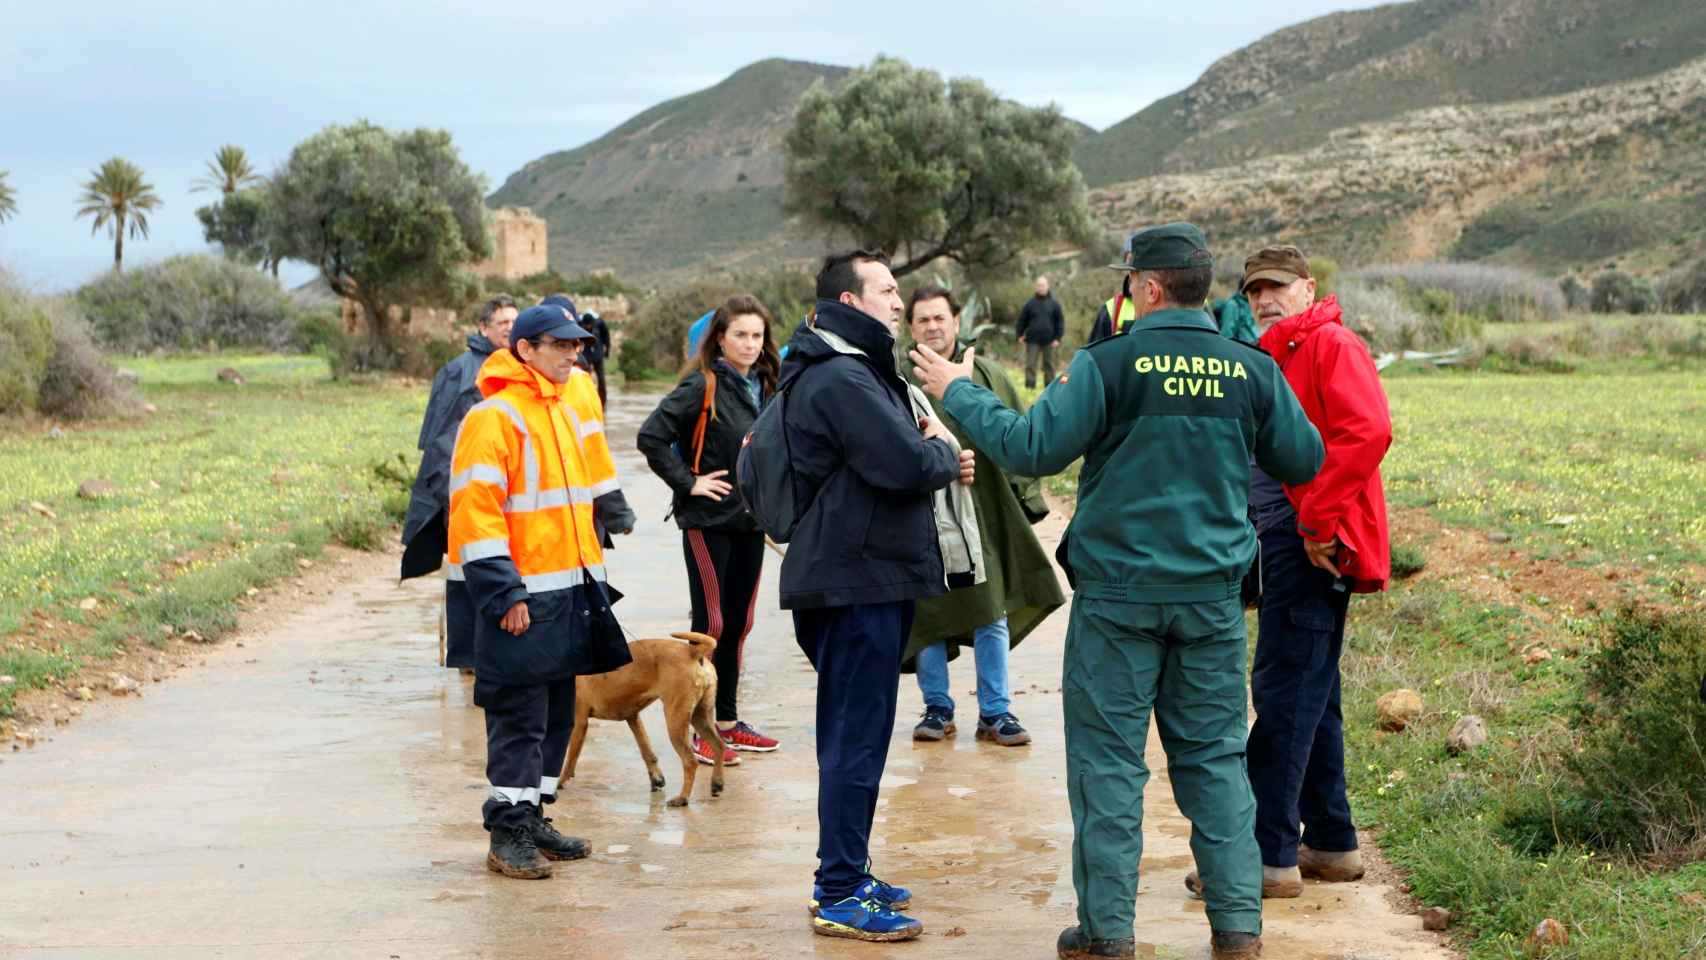 El dispositivo de búsqueda que intenta localizar a Gabriel Cruz, el niño de 8 años desaparecido el pasado martes en Las Hortichuelas, Níjar (Almería).